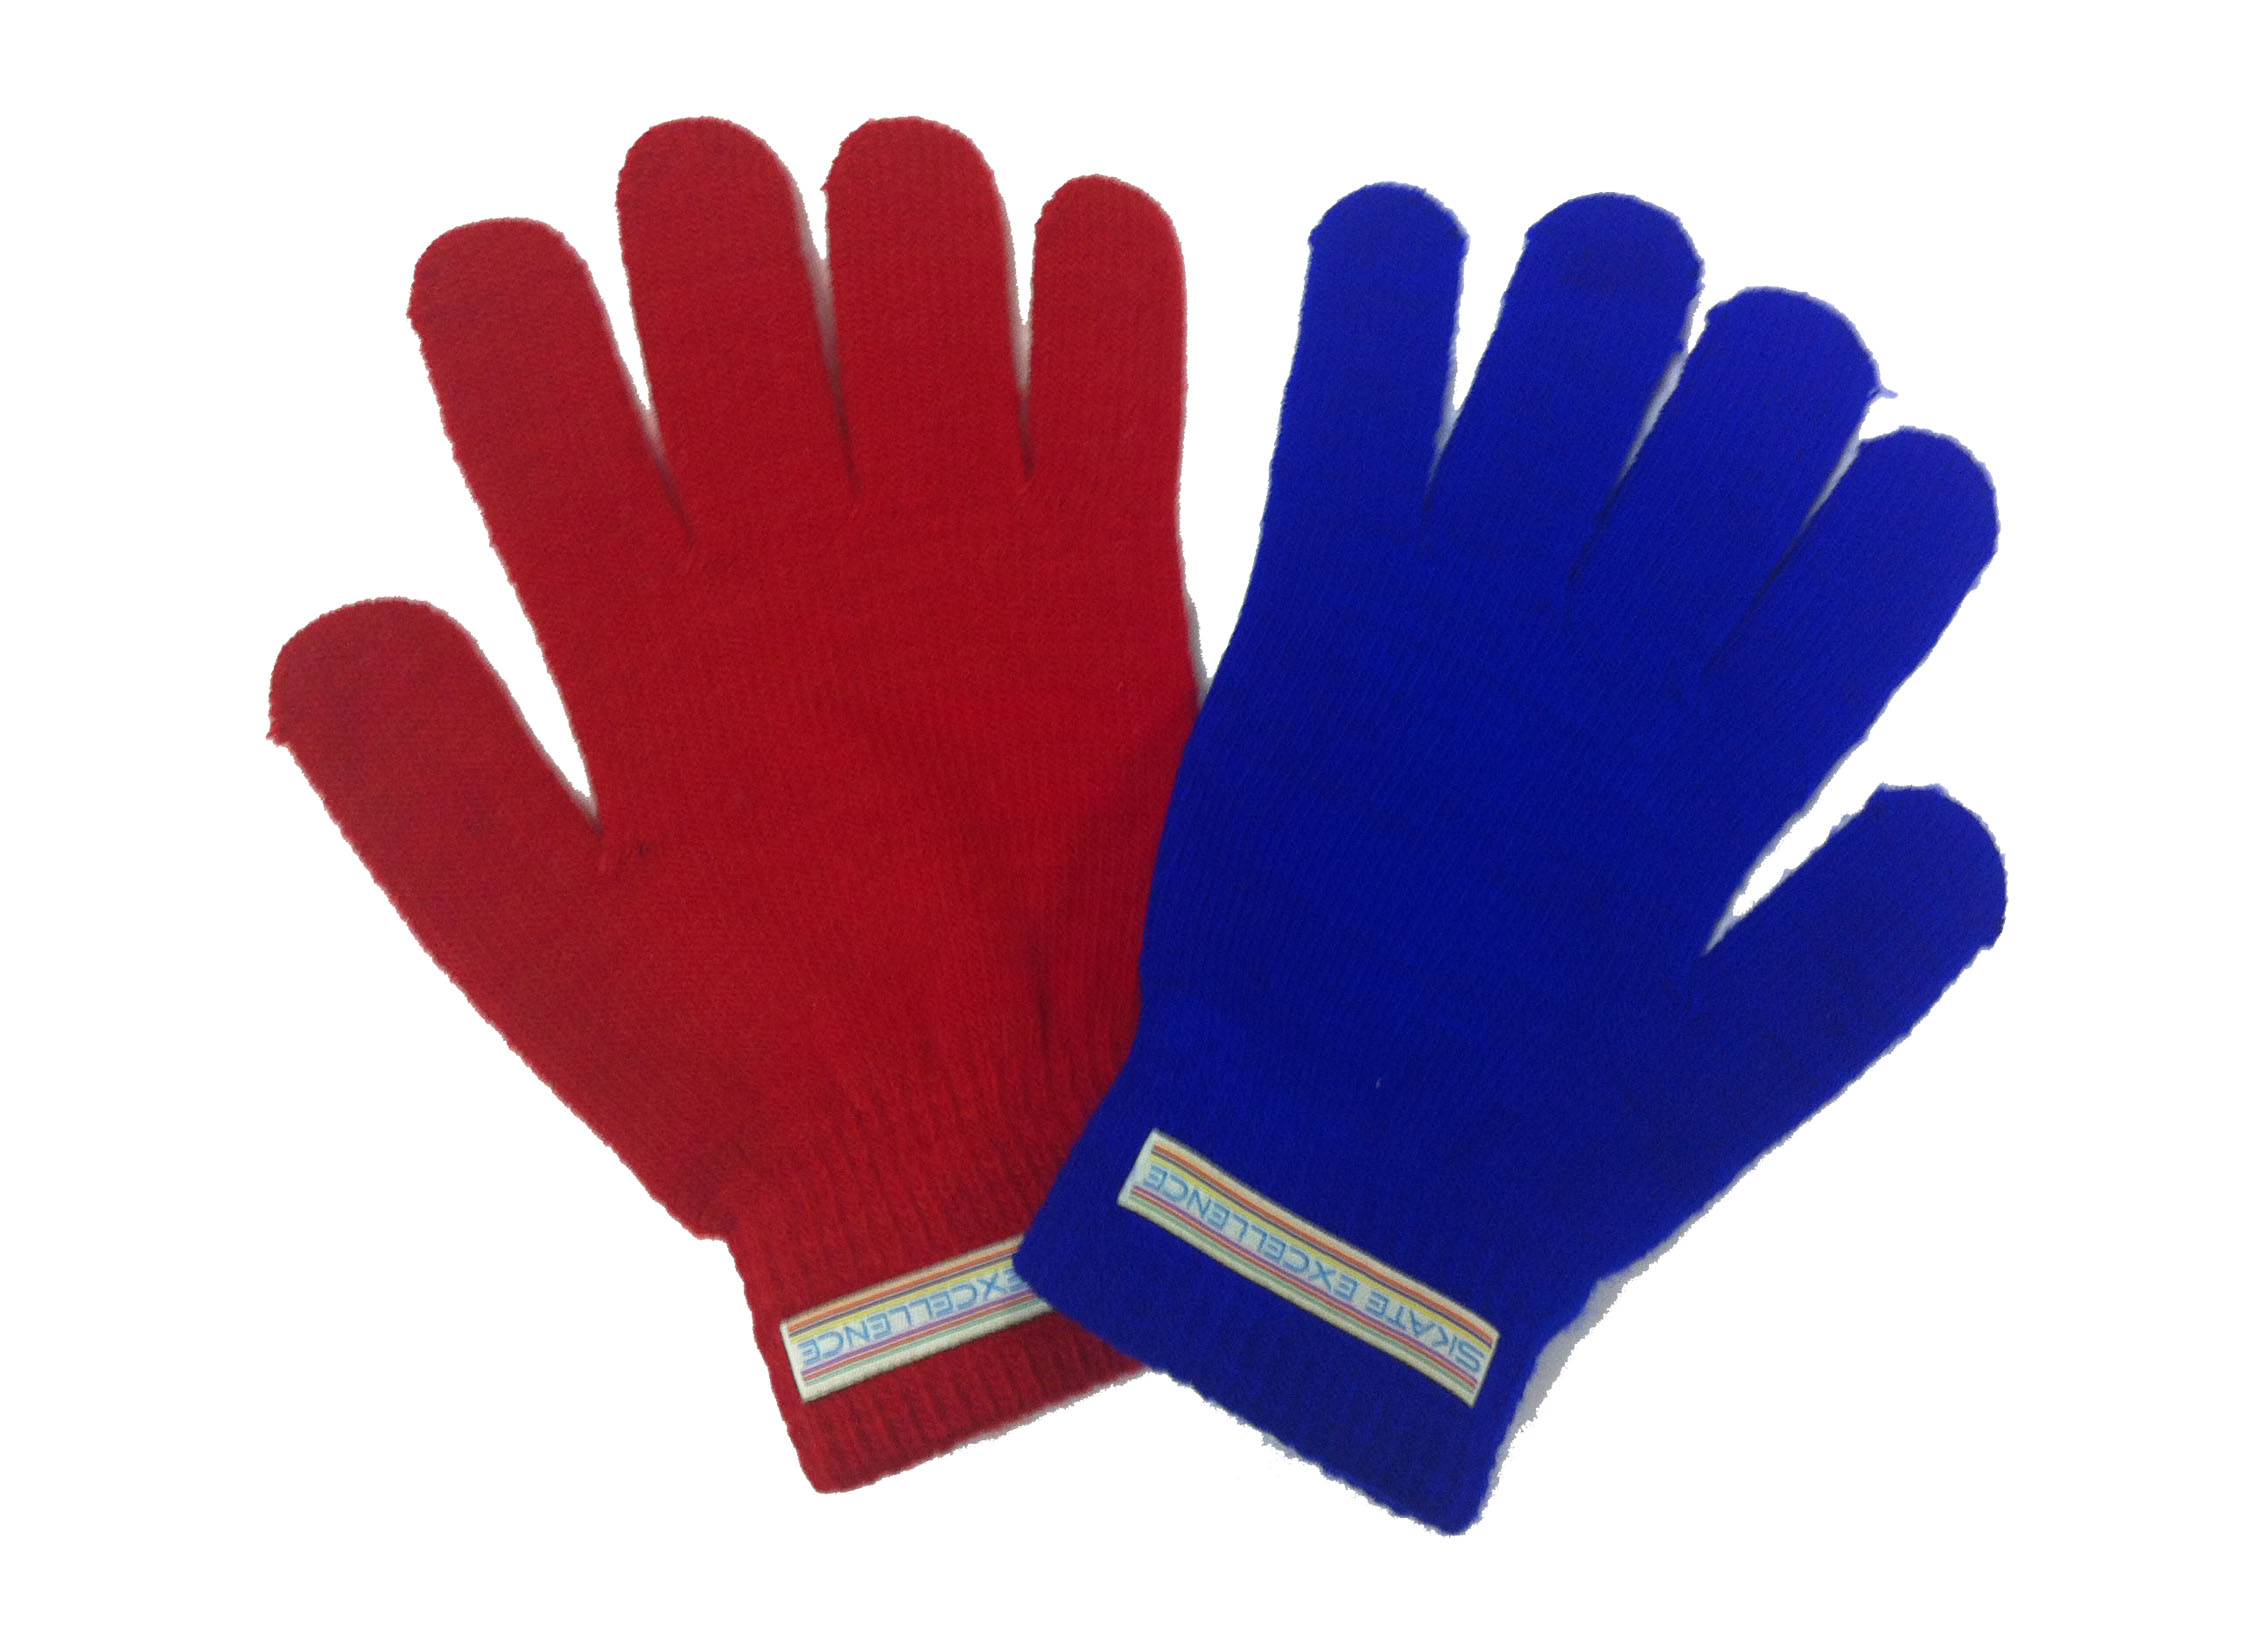 Skate Excellence Shop - Gloves